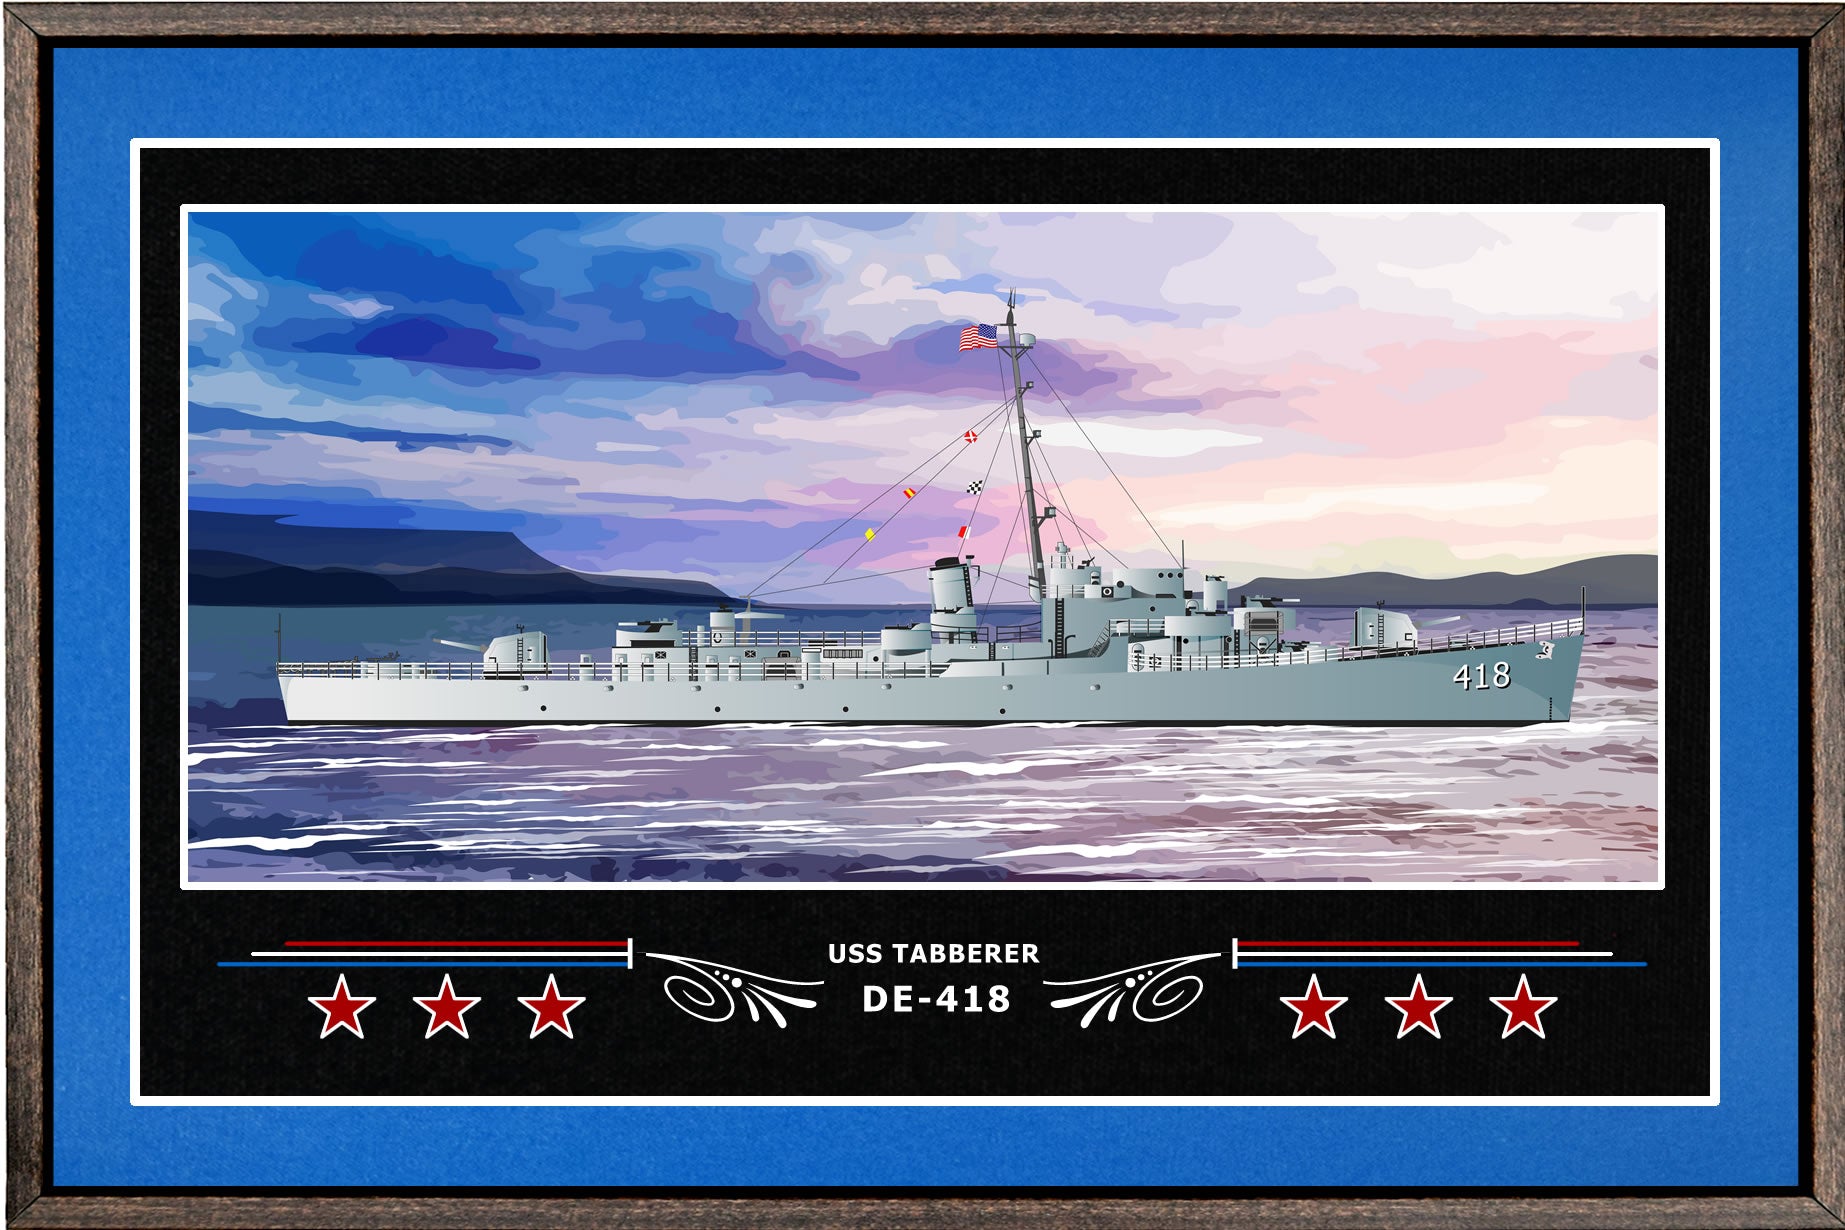 USS TABBERER DE 418 BOX FRAMED CANVAS ART BLUE